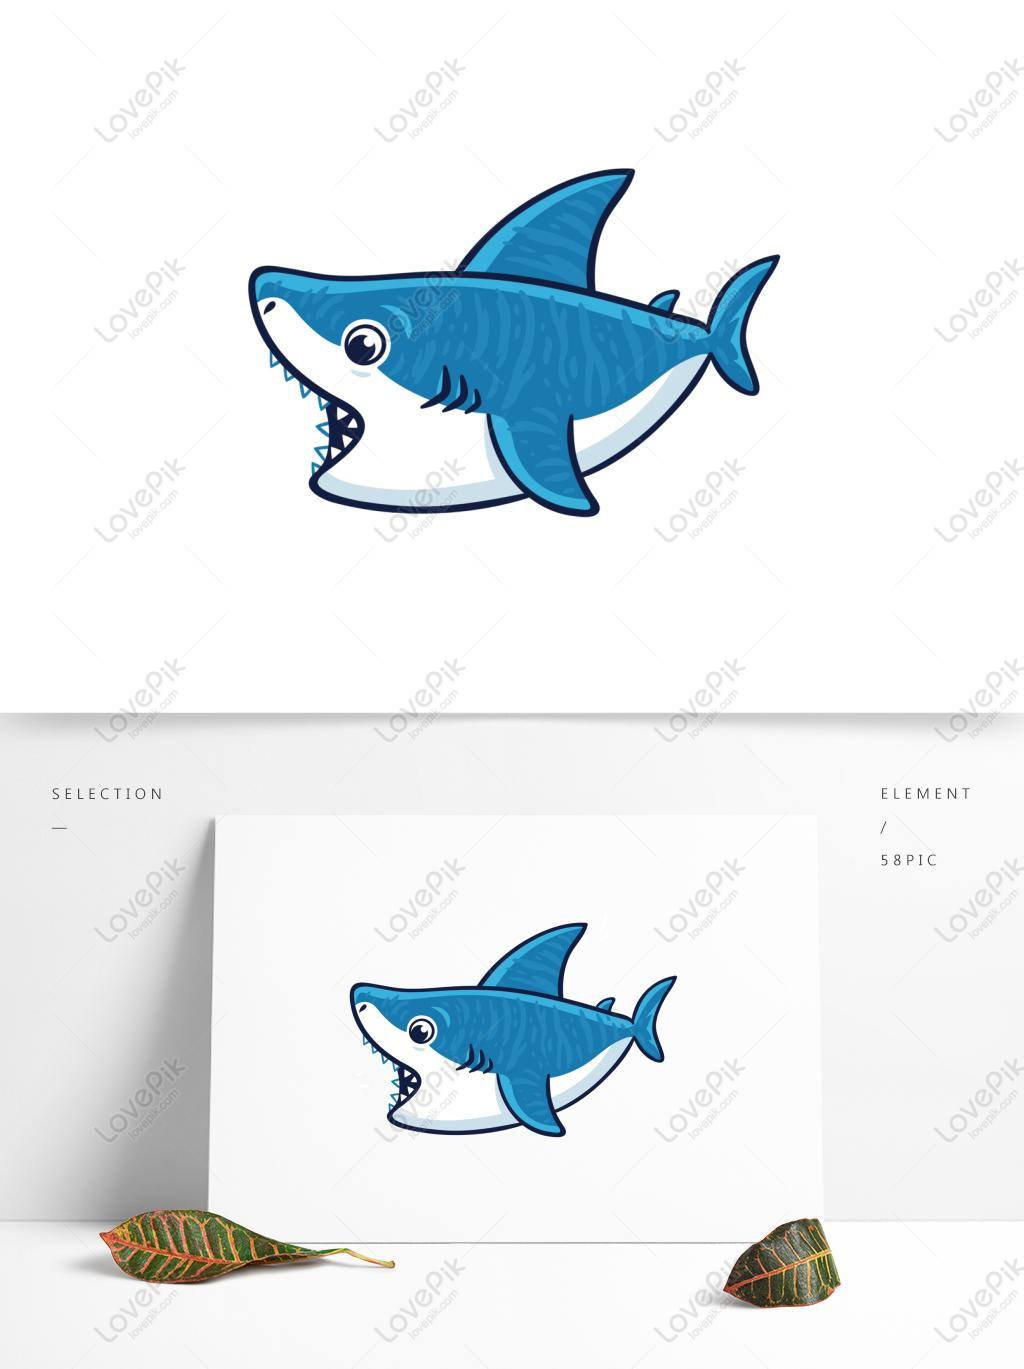 Nếu bạn yêu thích các loài động vật biển, hãy đến xem hình vẽ cá mập cute này! Với đường nét tinh tế và ánh mắt ngộ nghĩnh, hình vẽ này chắc chắn sẽ làm bạn bật ngửa trong niềm vui!